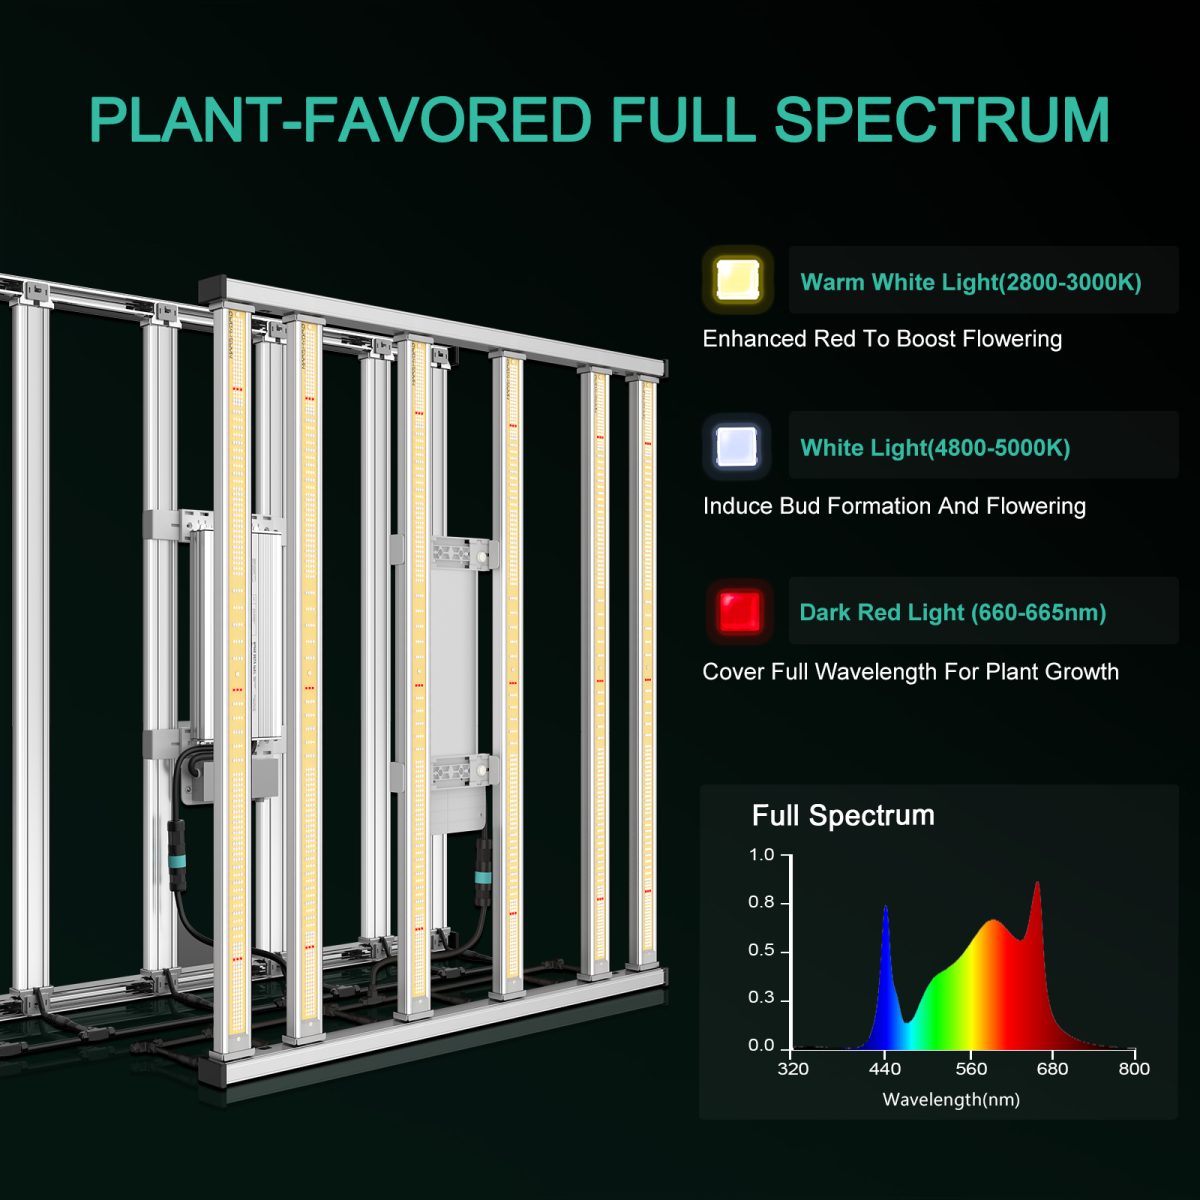 mars-hydro-fc-e4800-samrt-led-grow-light-provide-plant-favored-full-spectrum